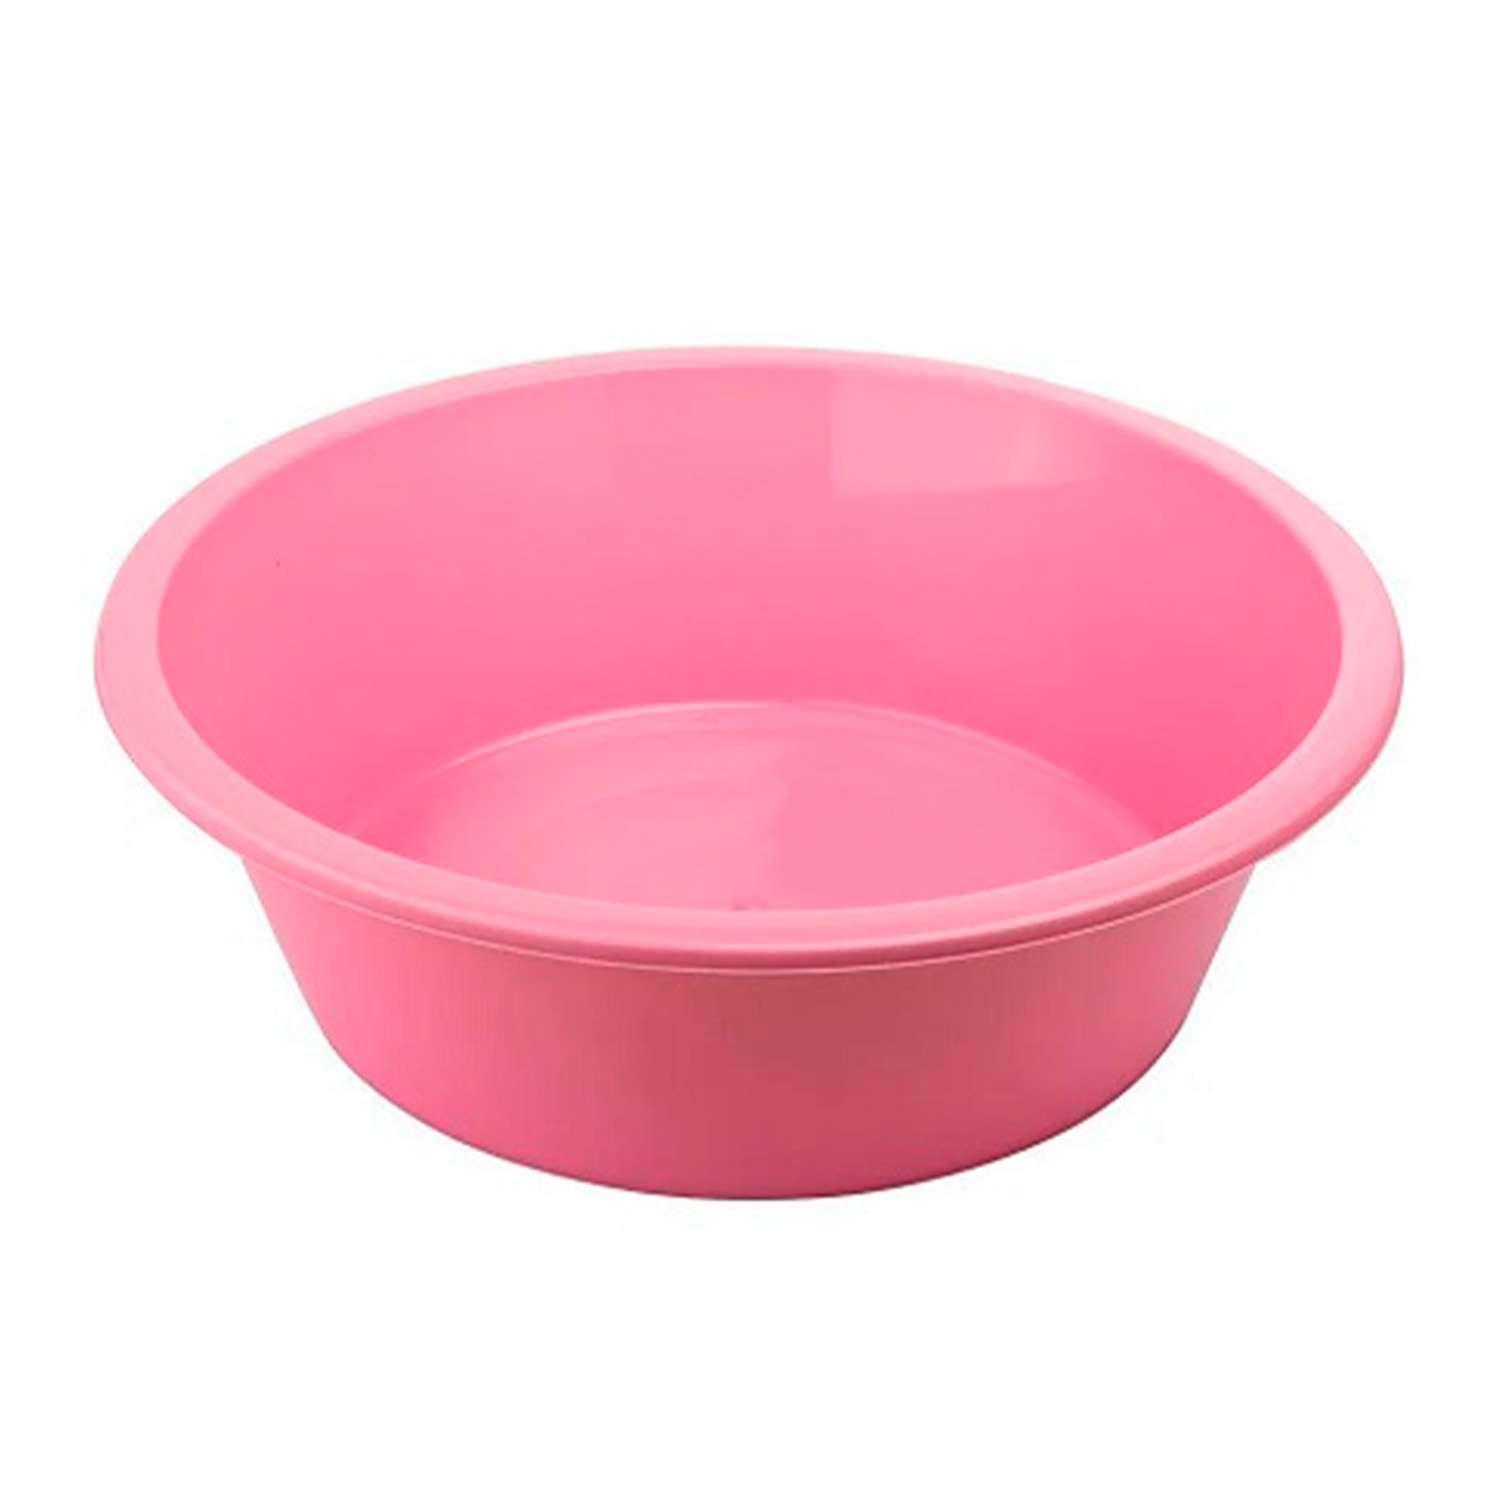 Таз elfplast круглый 11 литров розовый хозяйственный - фото 3